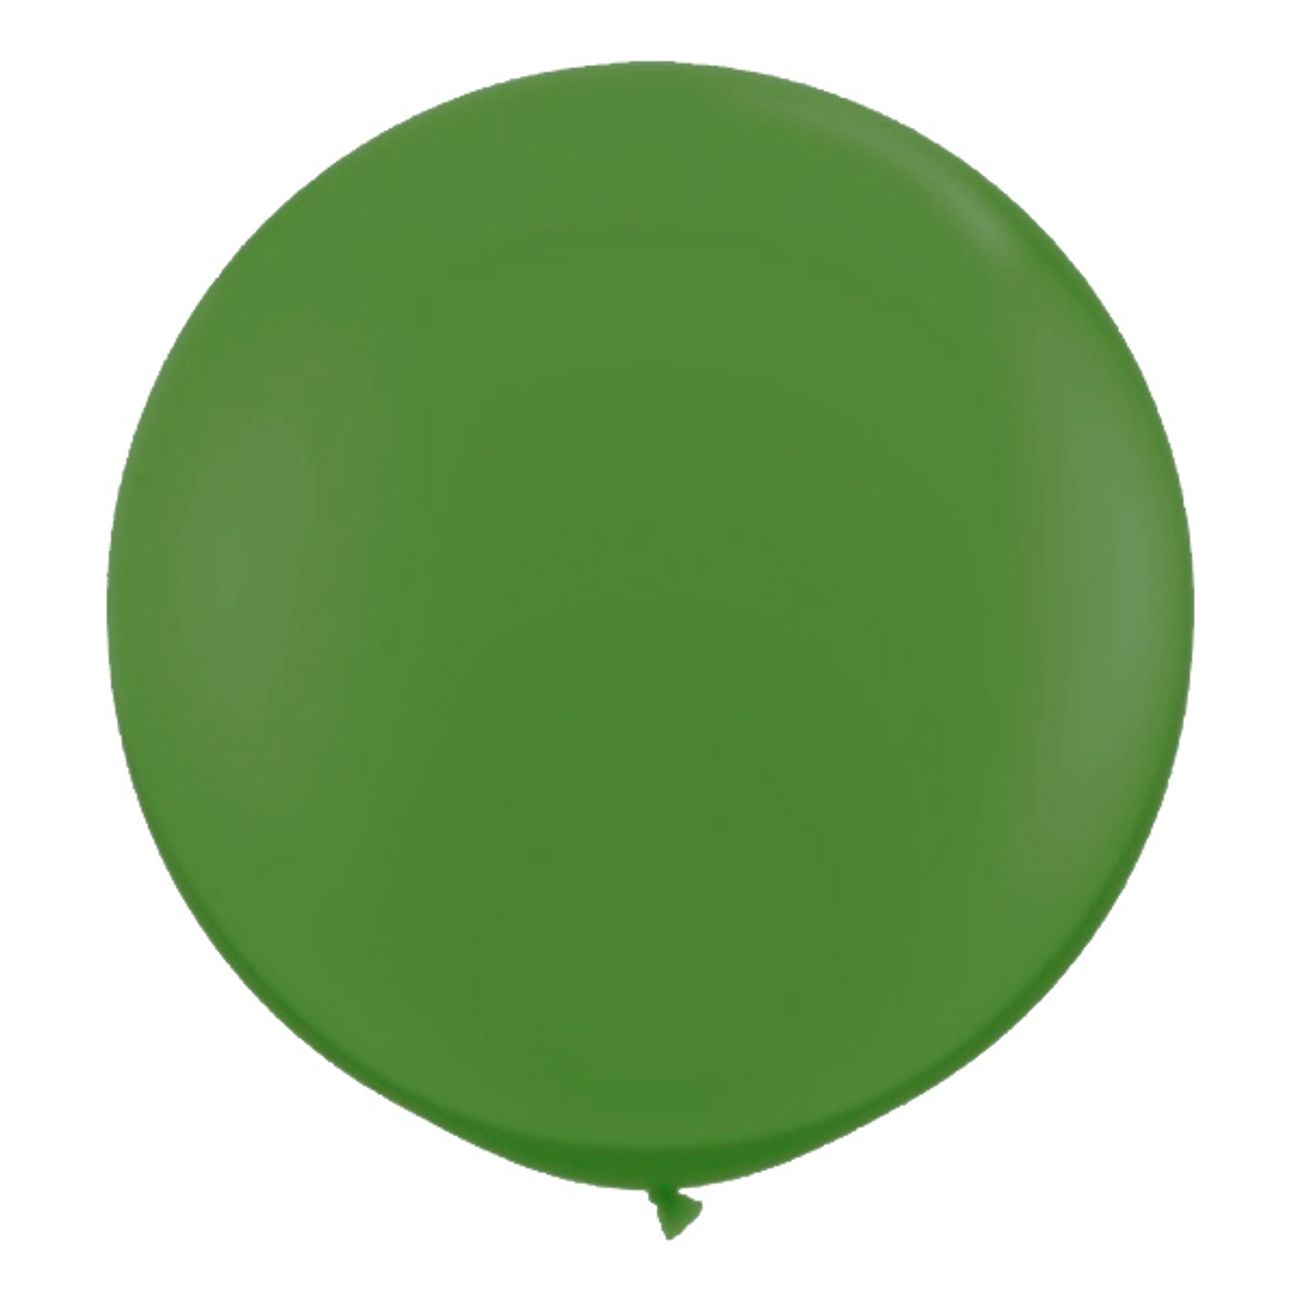 jatteballong-gron-1